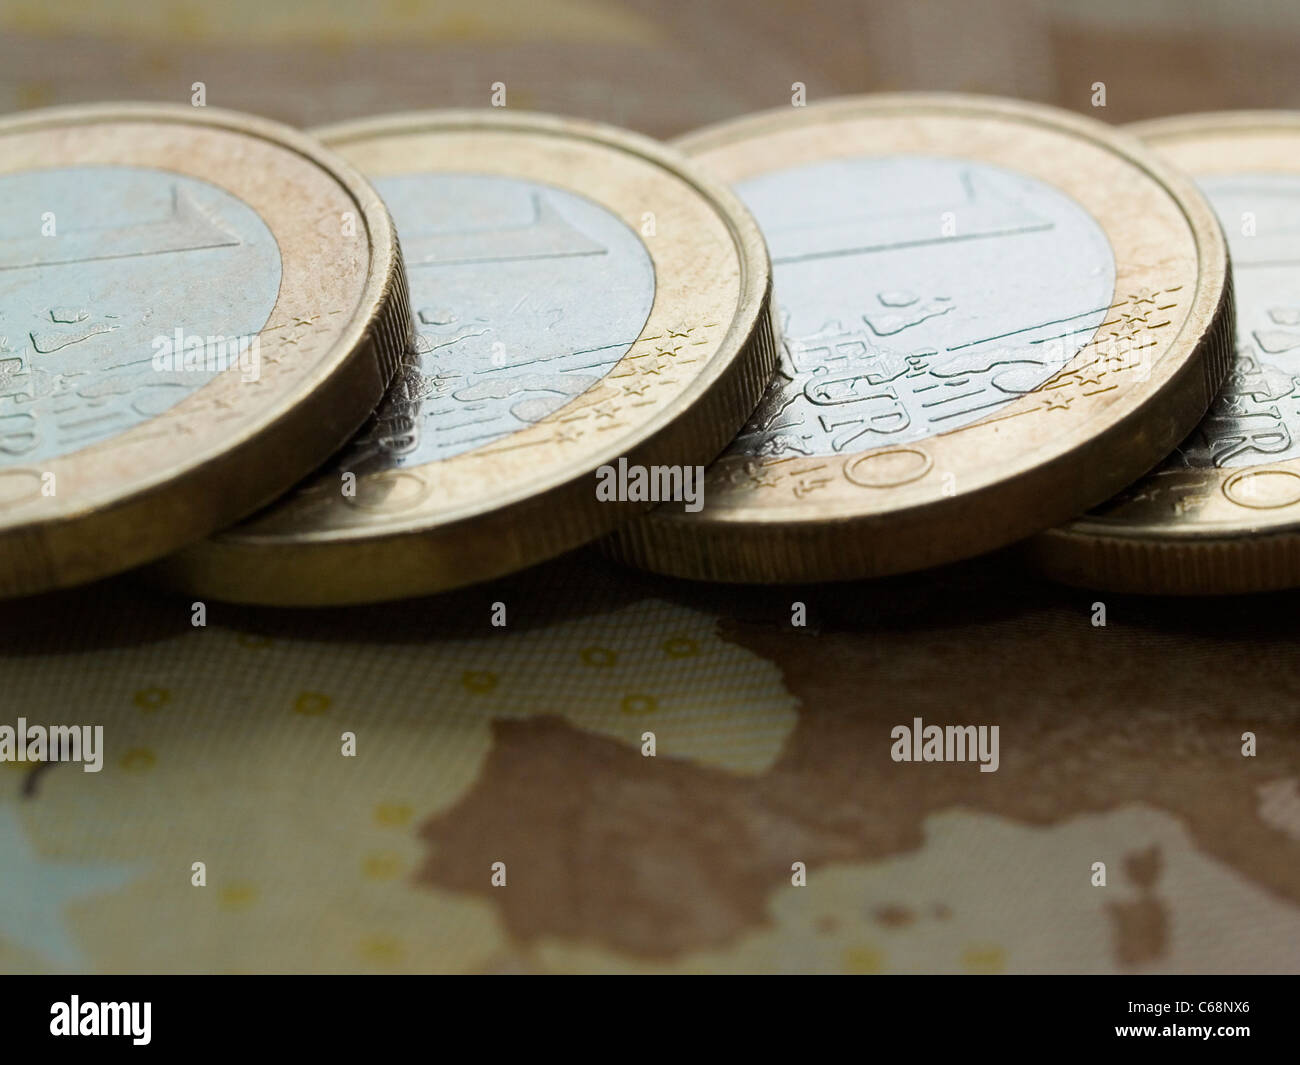 Detailaufnahme von 1 Euro Münzen auf einem 50 Euro Schein | Detail photo of 1 euro coins on a 50 euros banknote Stock Photo